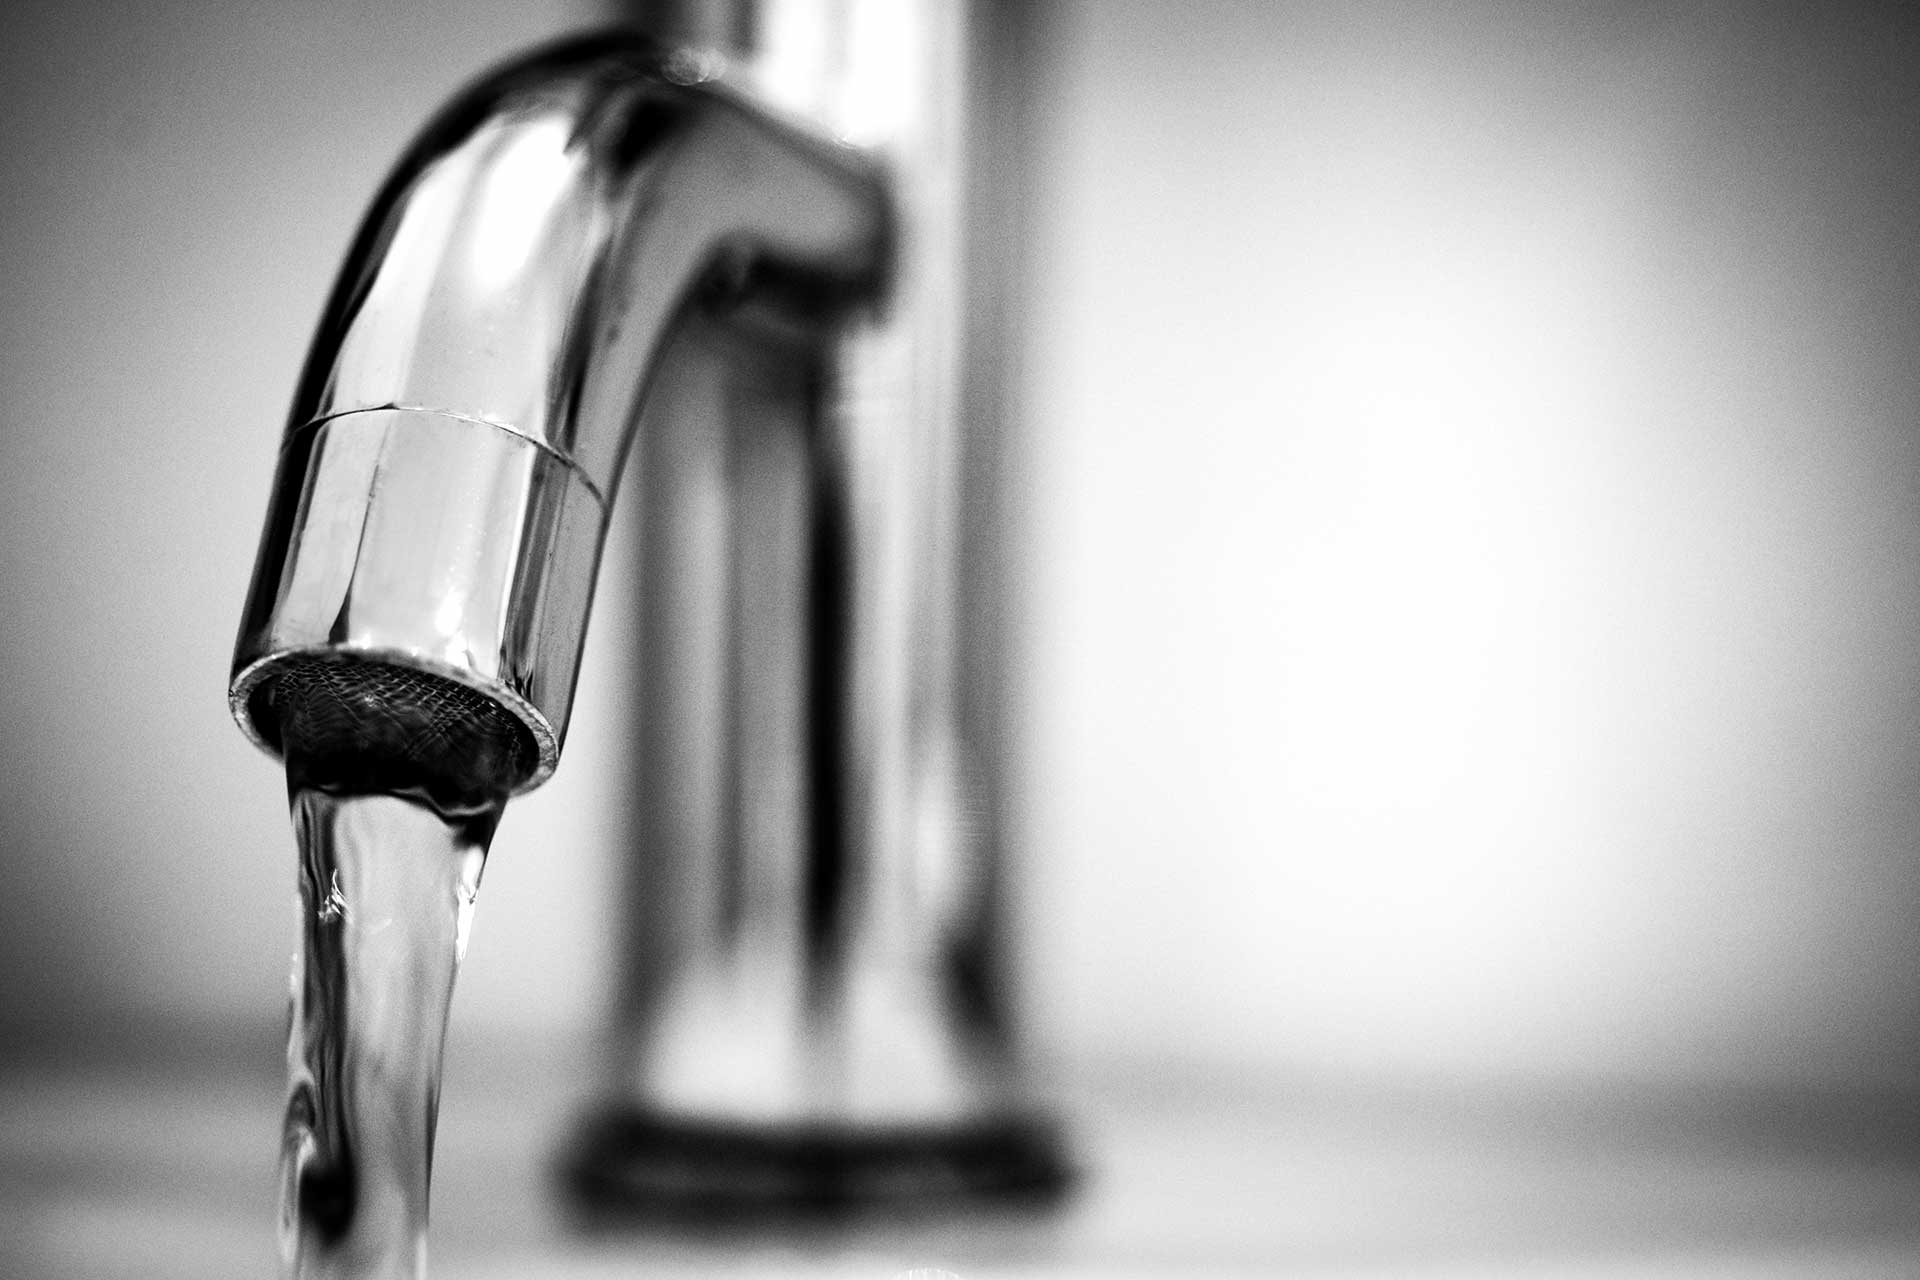 Une Info surveillance de la qualité de l’eau du robinet en toute transparence